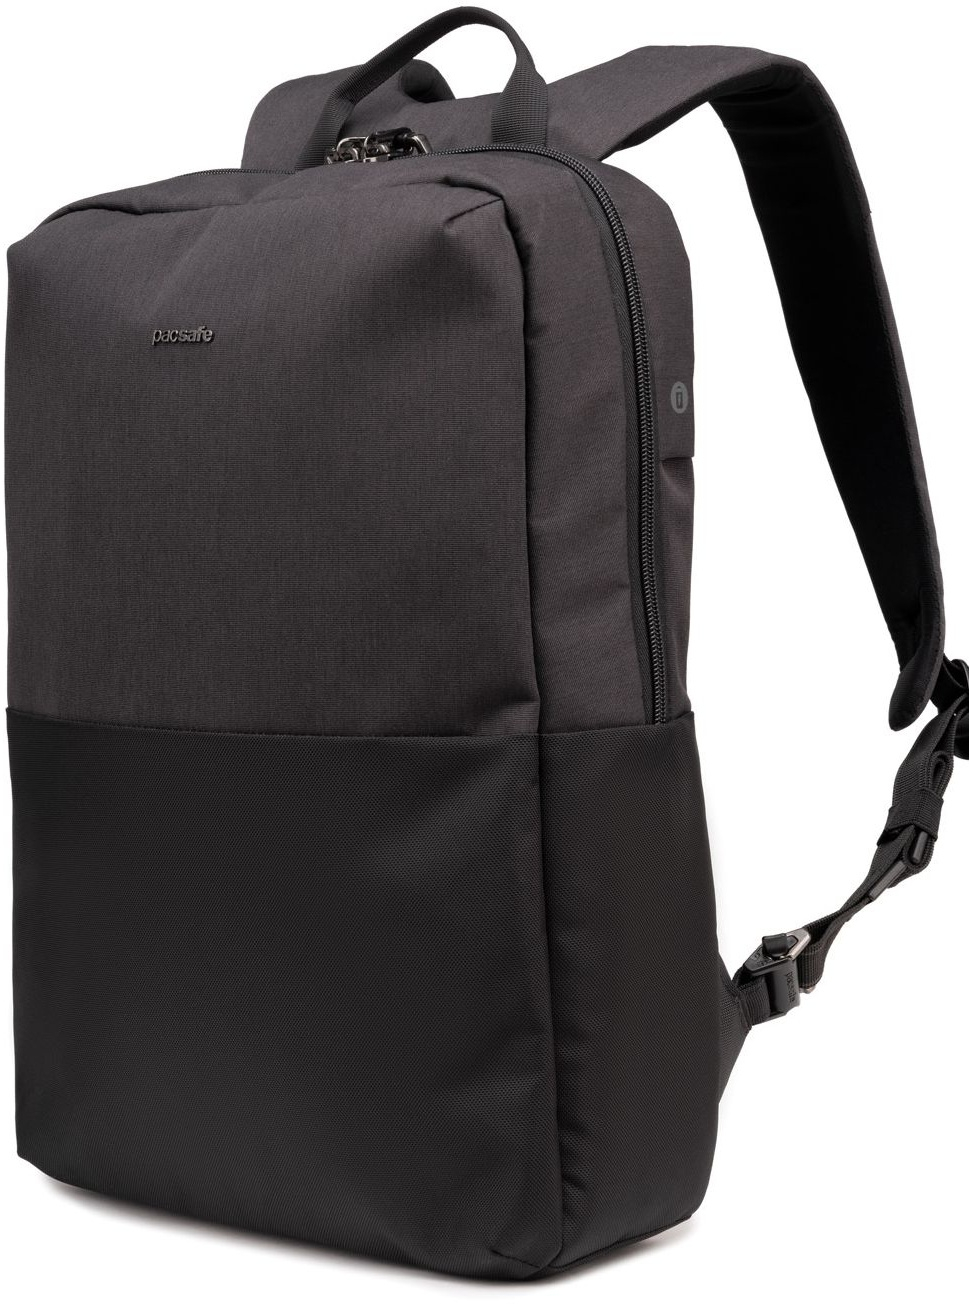 Slnt backpack